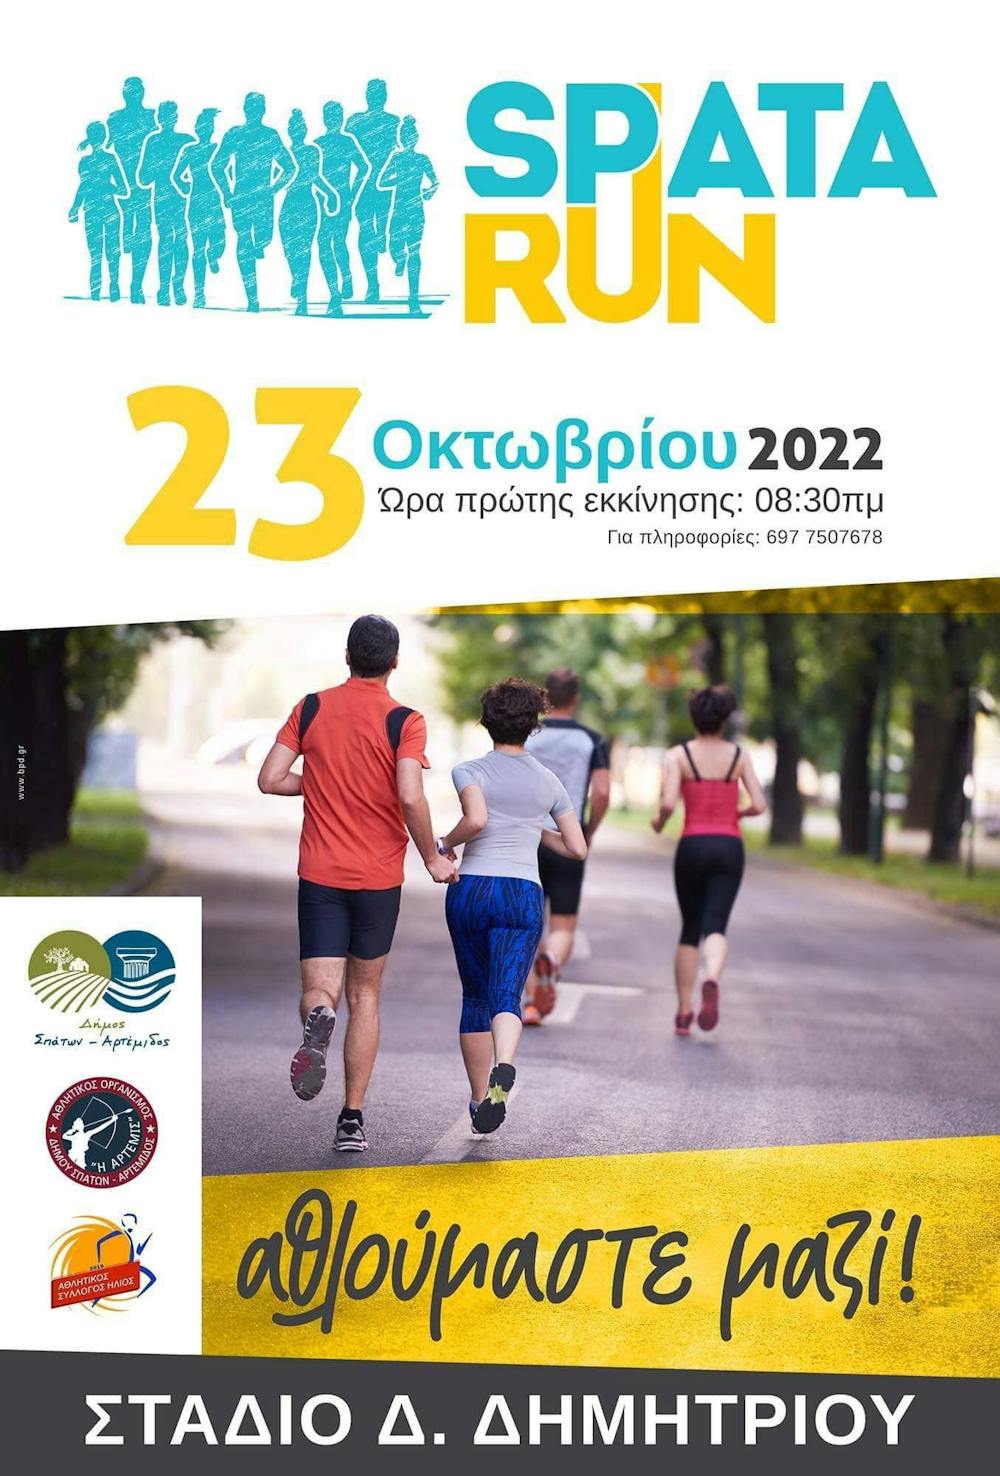 Στις 23 Οκτωβρίου η νέα δρομική διοργάνωση «Spata Run» runbeat.gr 